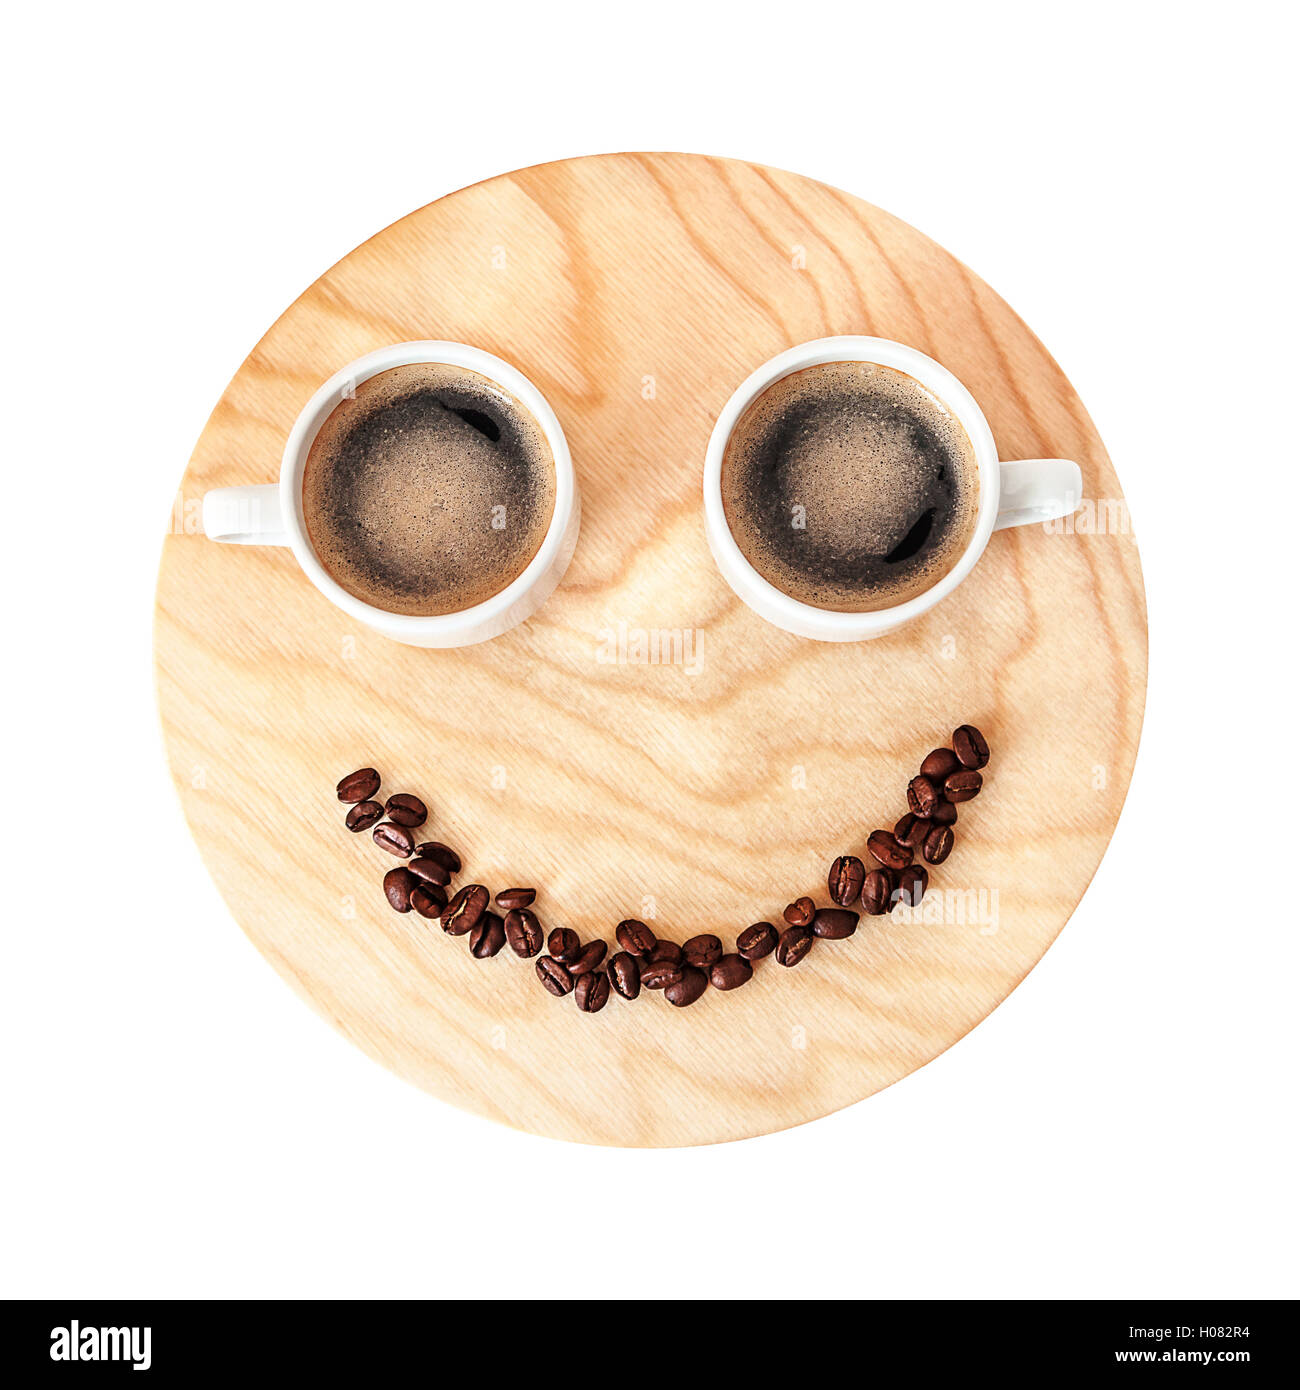 Lustige Kaffeepause Konzept auf Holz isoliert auf weißem Hintergrund. Tasse Kaffee am Morgen. Kaffeepause für zwei Personen Stockfoto